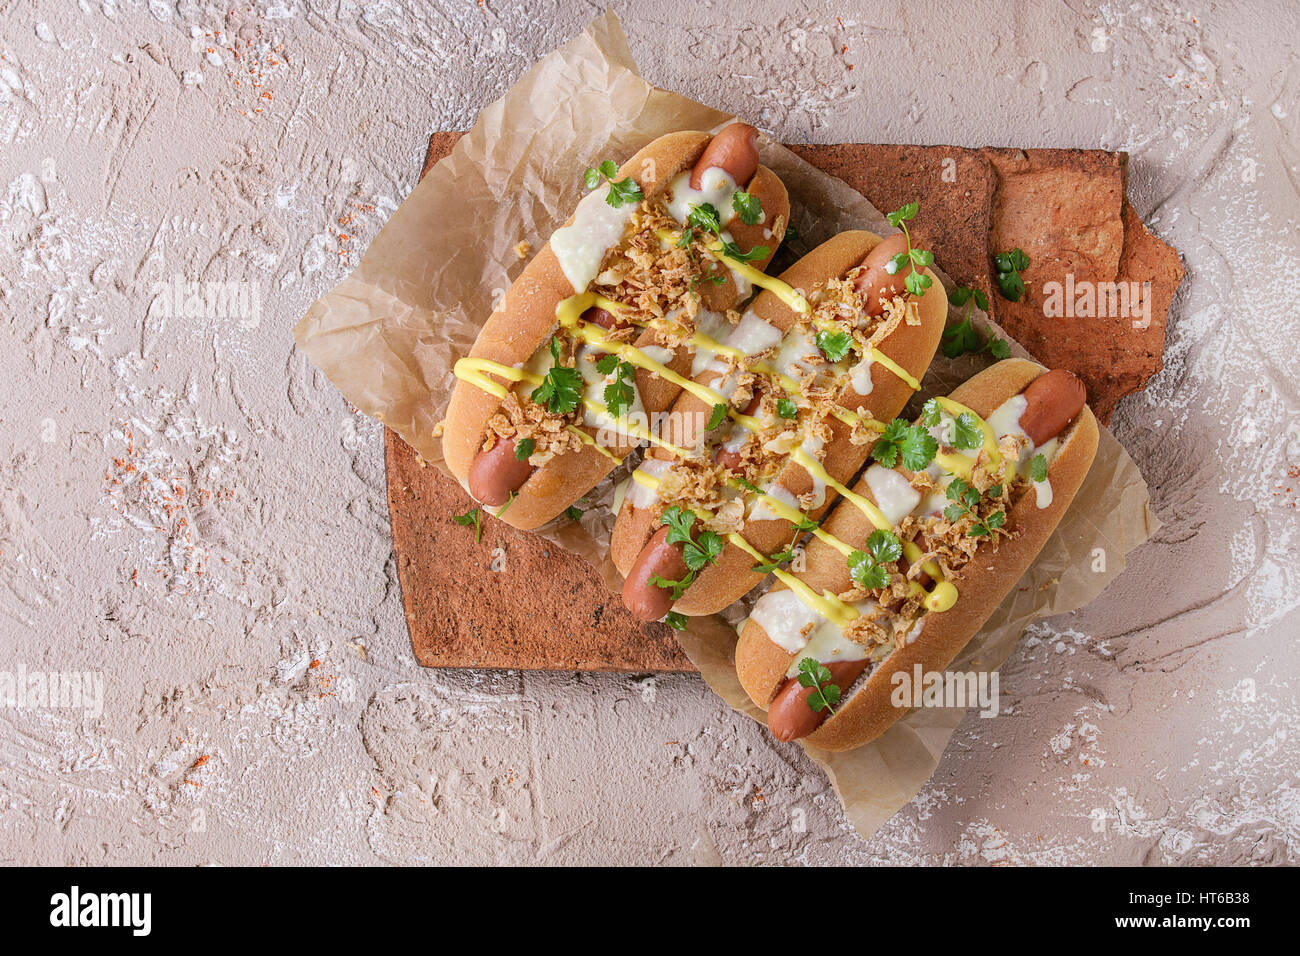 Hot Dogs mit Wurst, gebratenen Zwiebeln, Koriander, Käse-Sauce und Senf, serviert auf Terrakotta-Board über Beige Betontextur Hintergrund. FAS Stockfoto